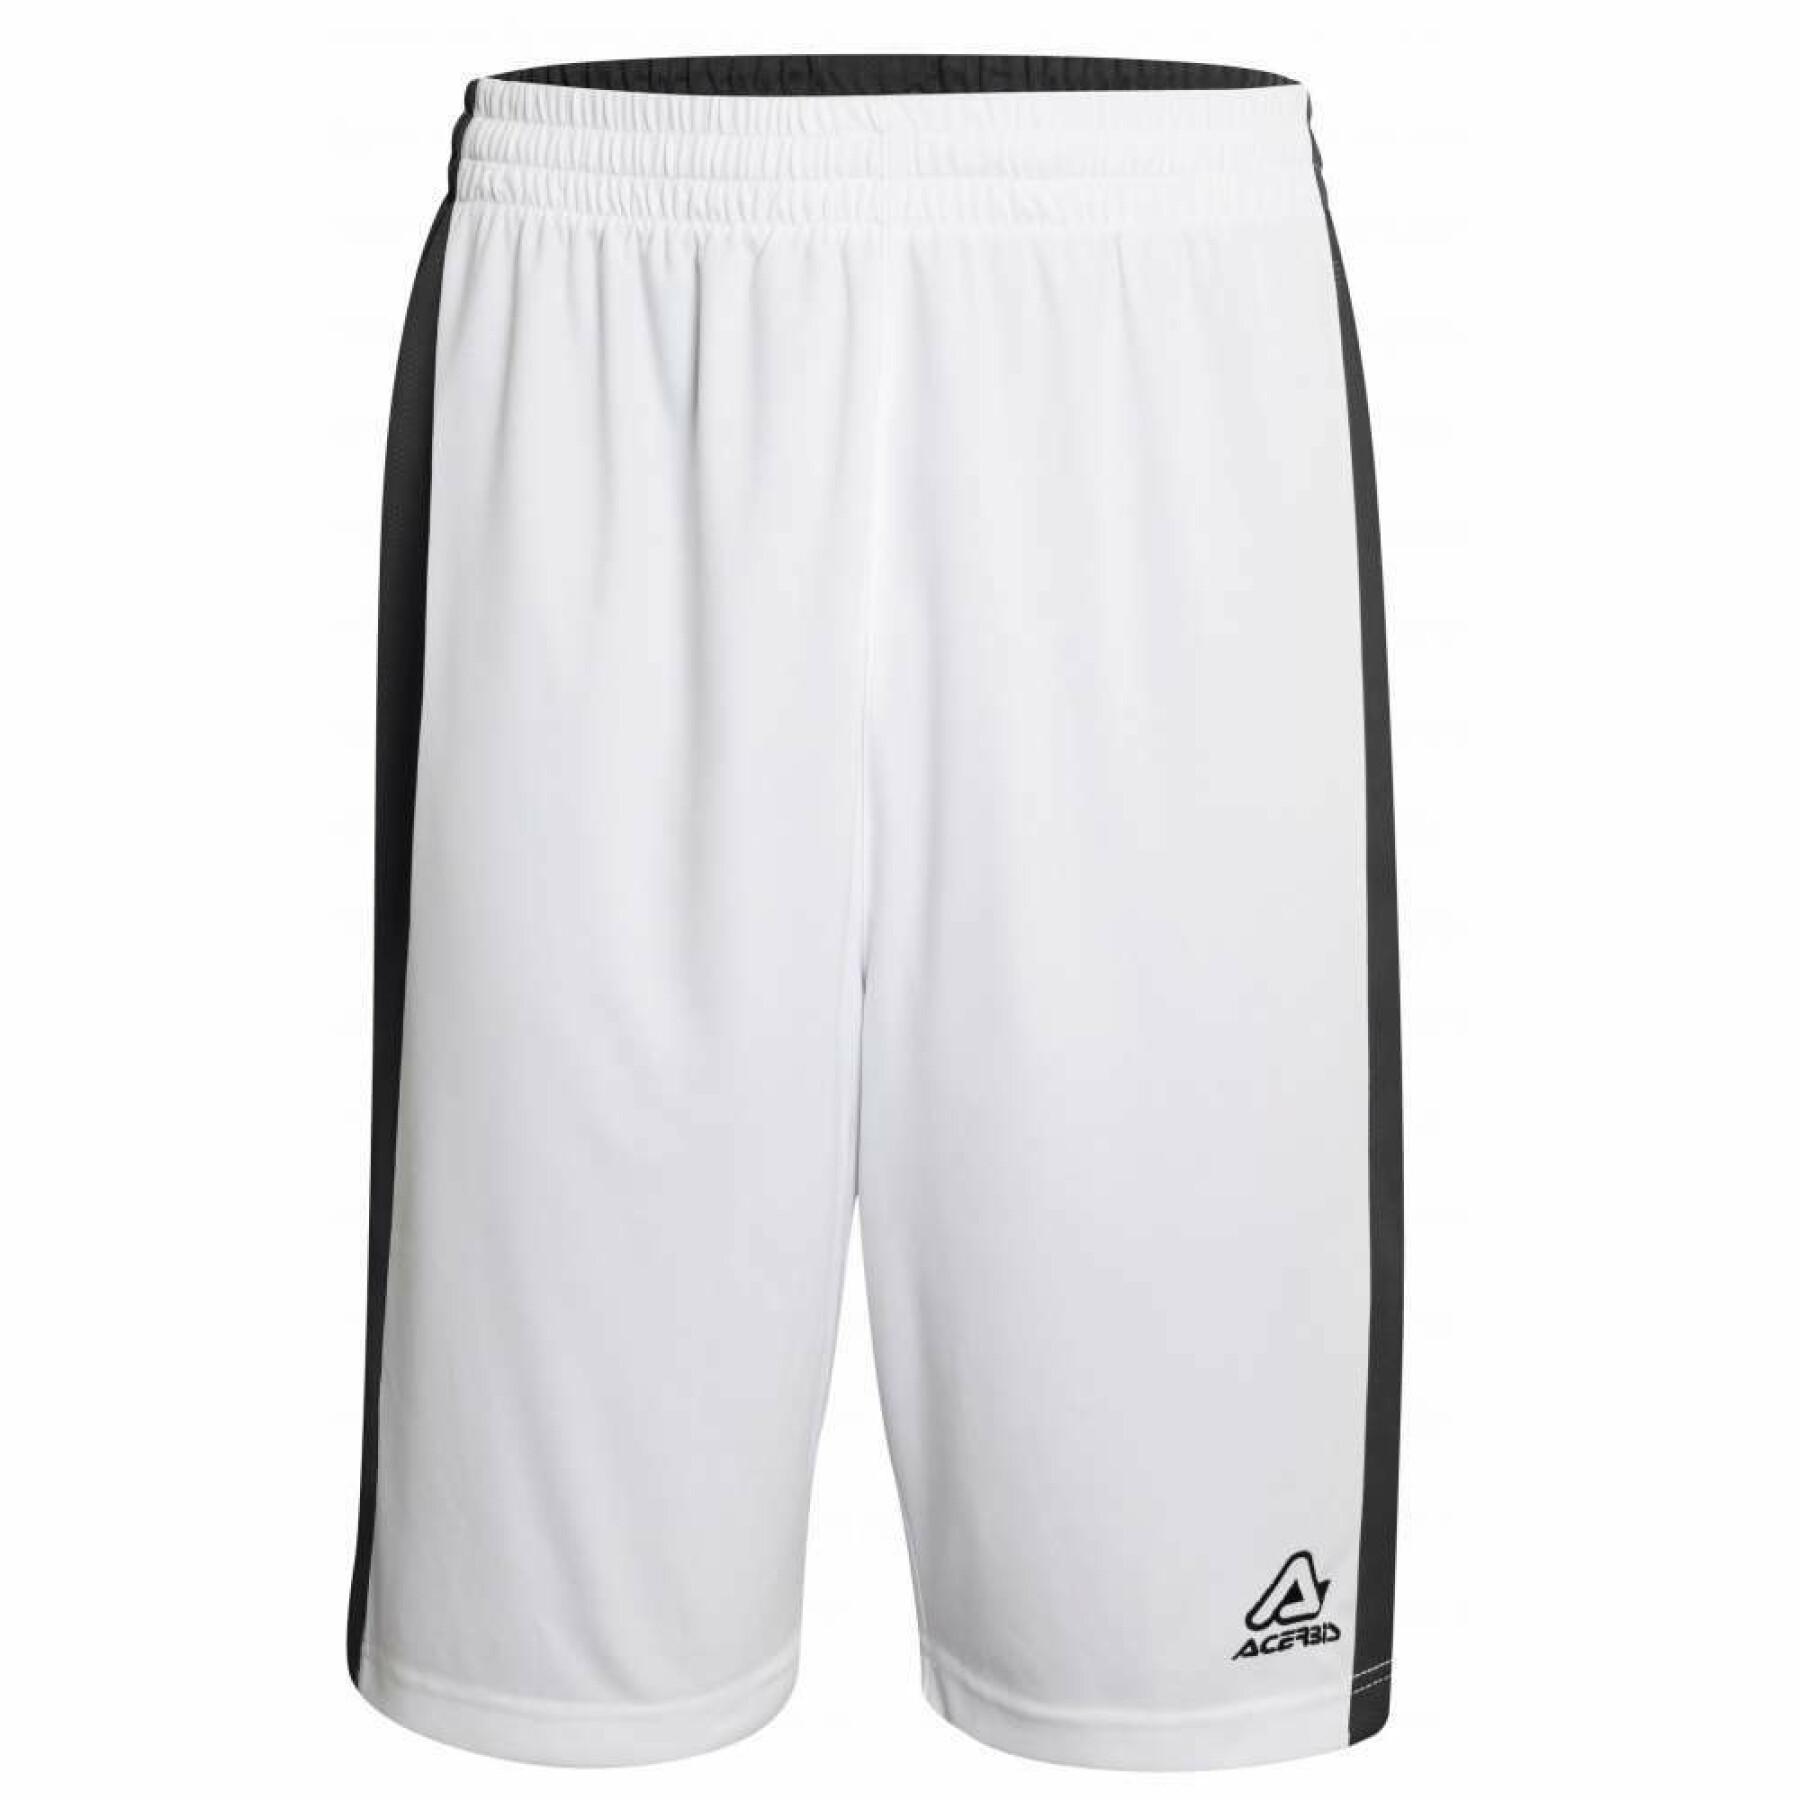 Reversible shorts Acerbis Larry